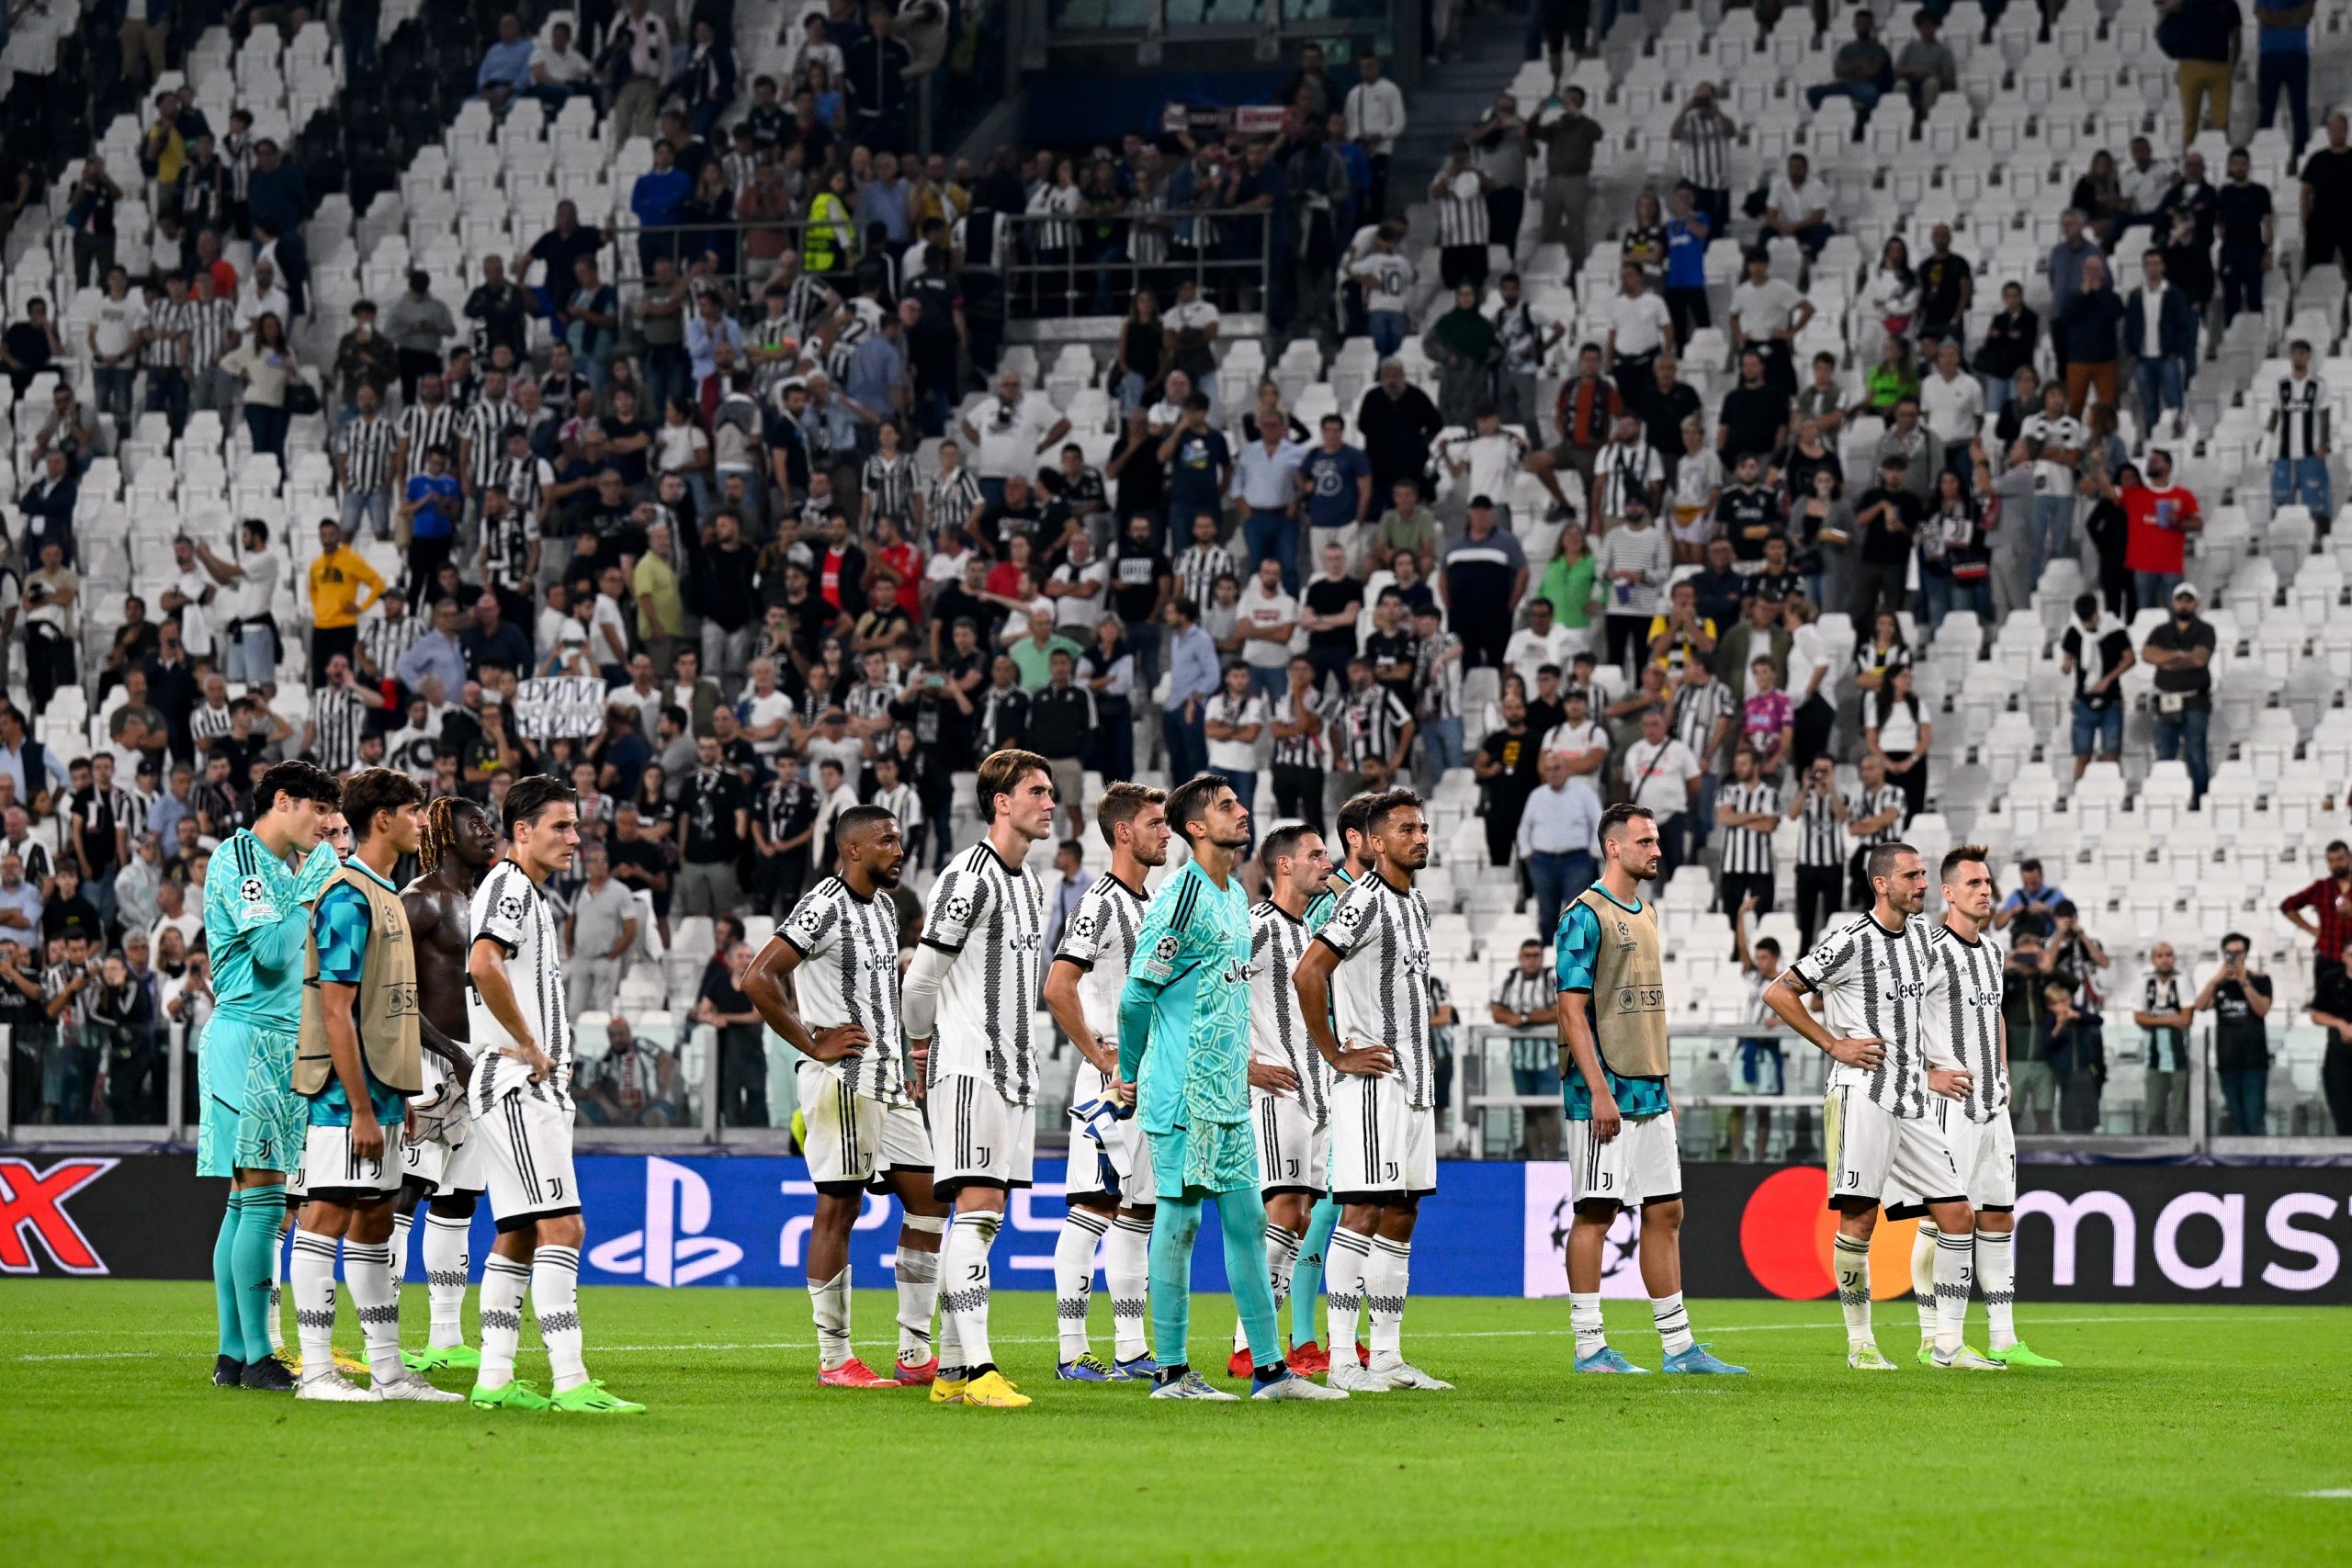 MITICO ALLENATORE ITALIANO: “I giocatori della Juventus sembrano spaventati!”  – Campionati europei, notizie sportive di calcio